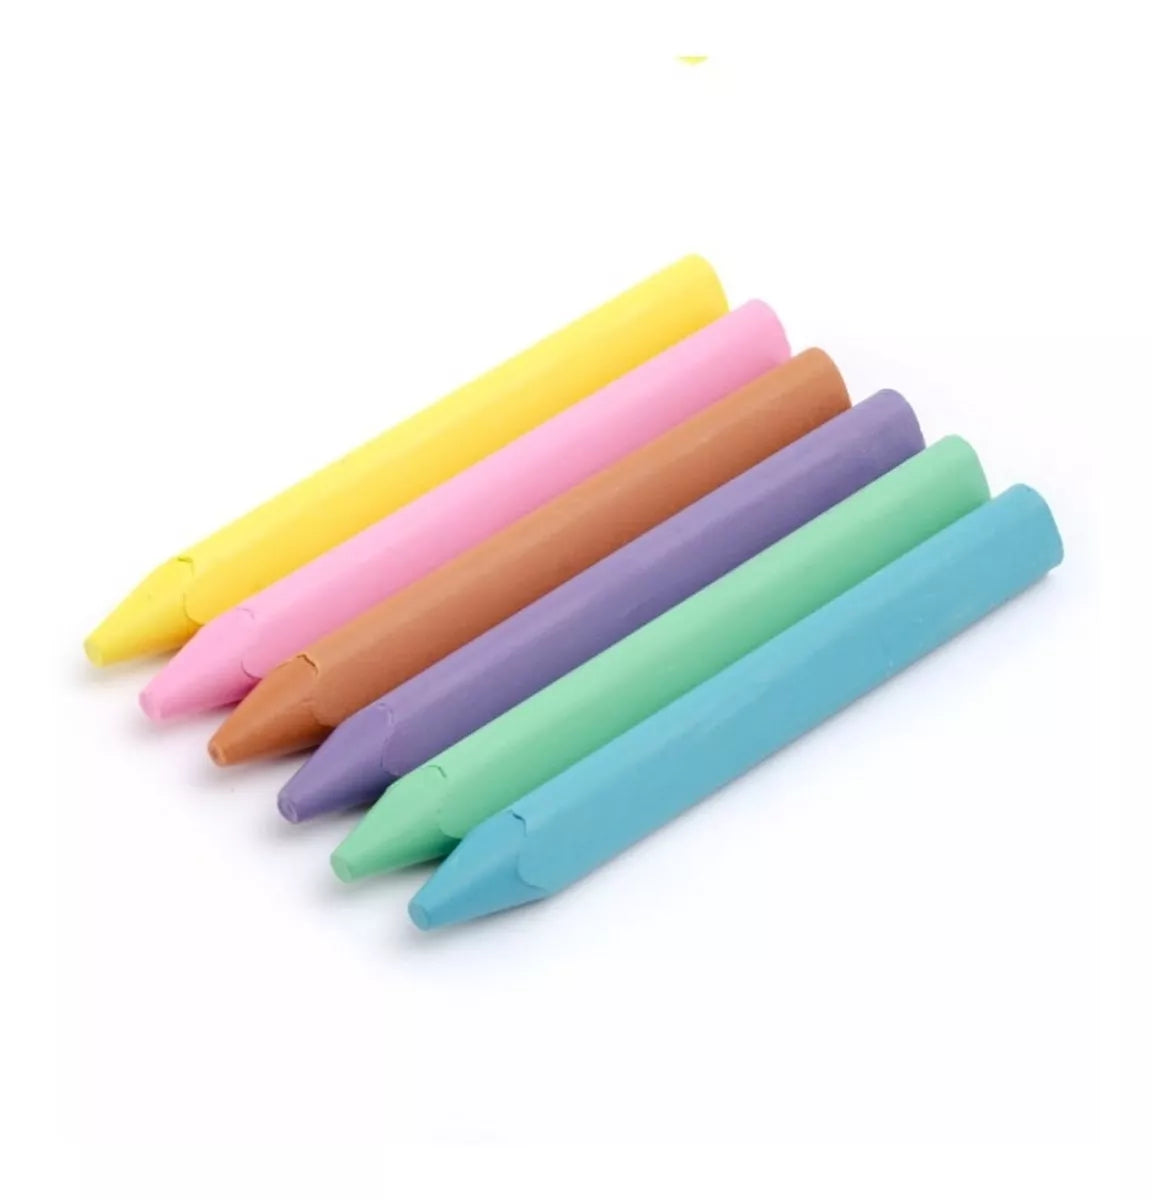 6 Crayones Jumbo Colores Pastel Pelikan Niños Escolar Dibujo